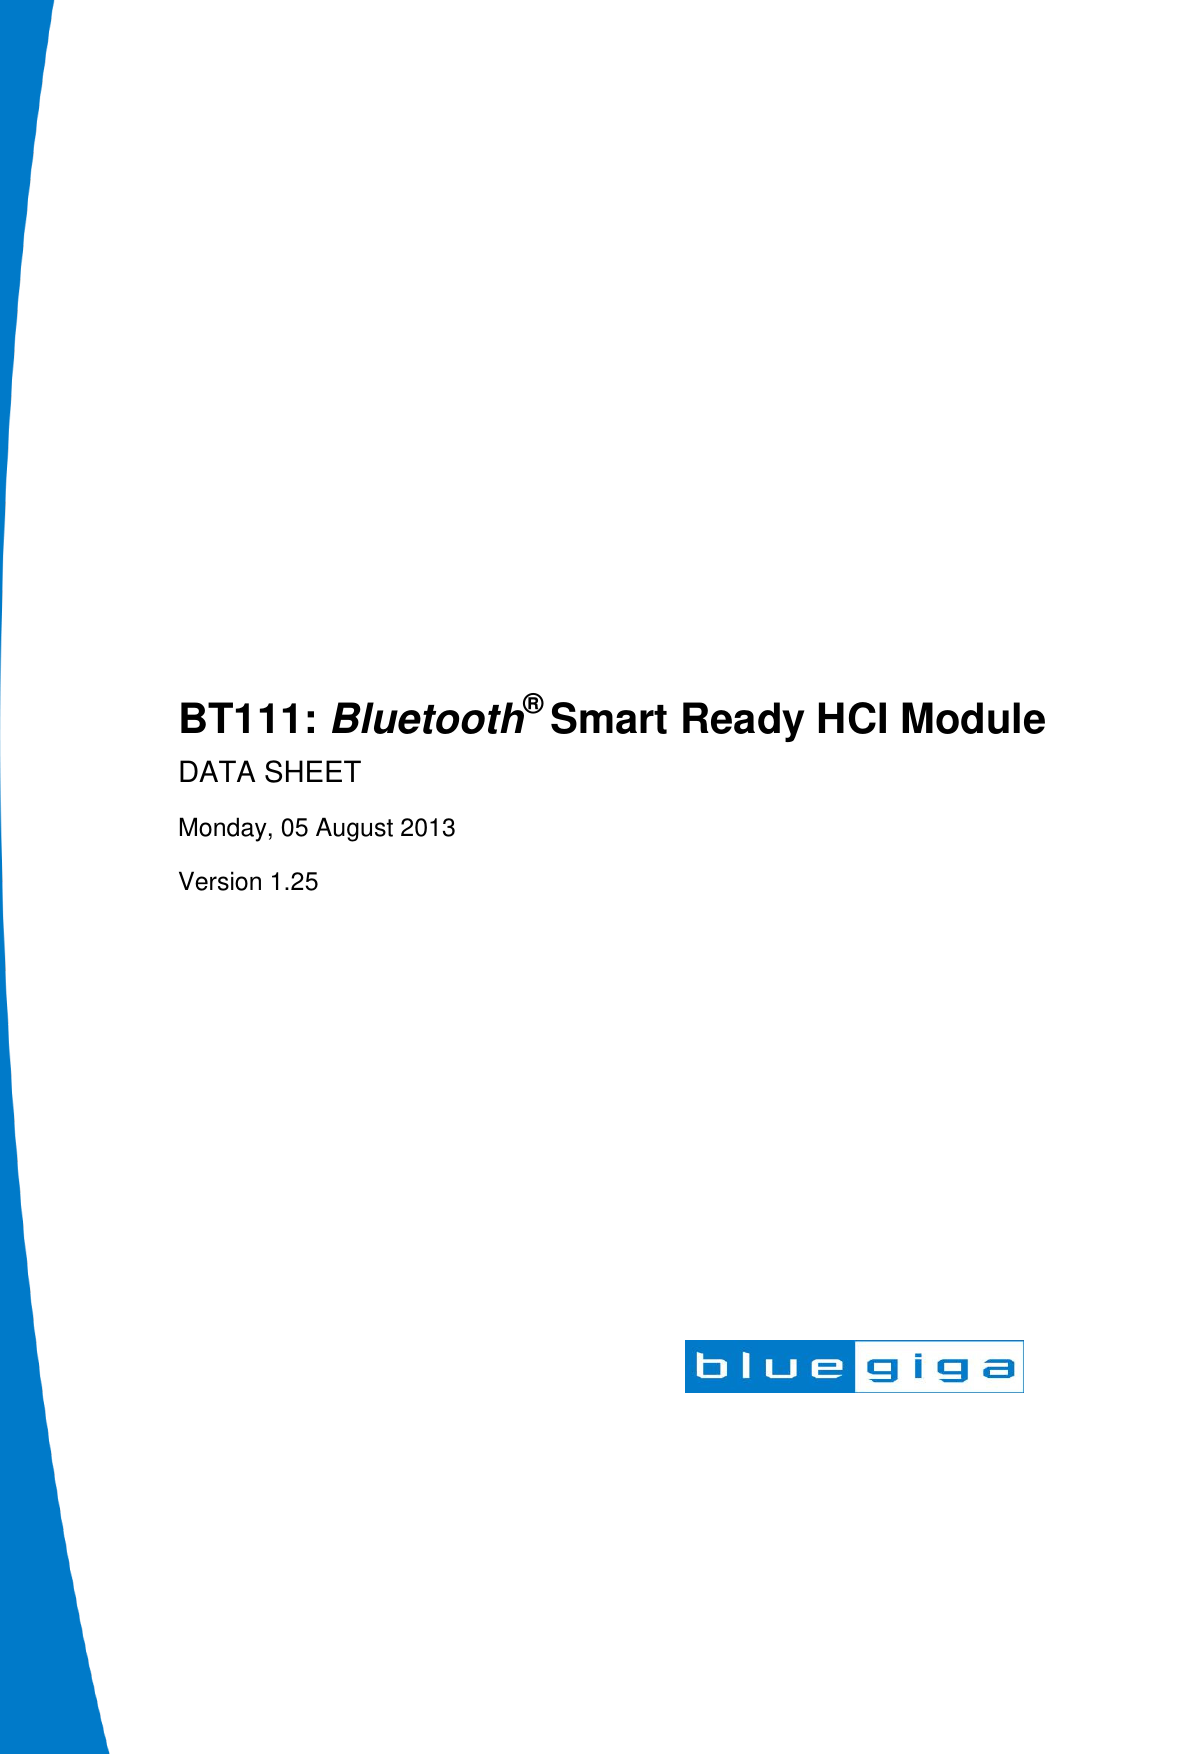                 BT111: Bluetooth® Smart Ready HCI Module DATA SHEET Monday, 05 August 2013 Version 1.25  